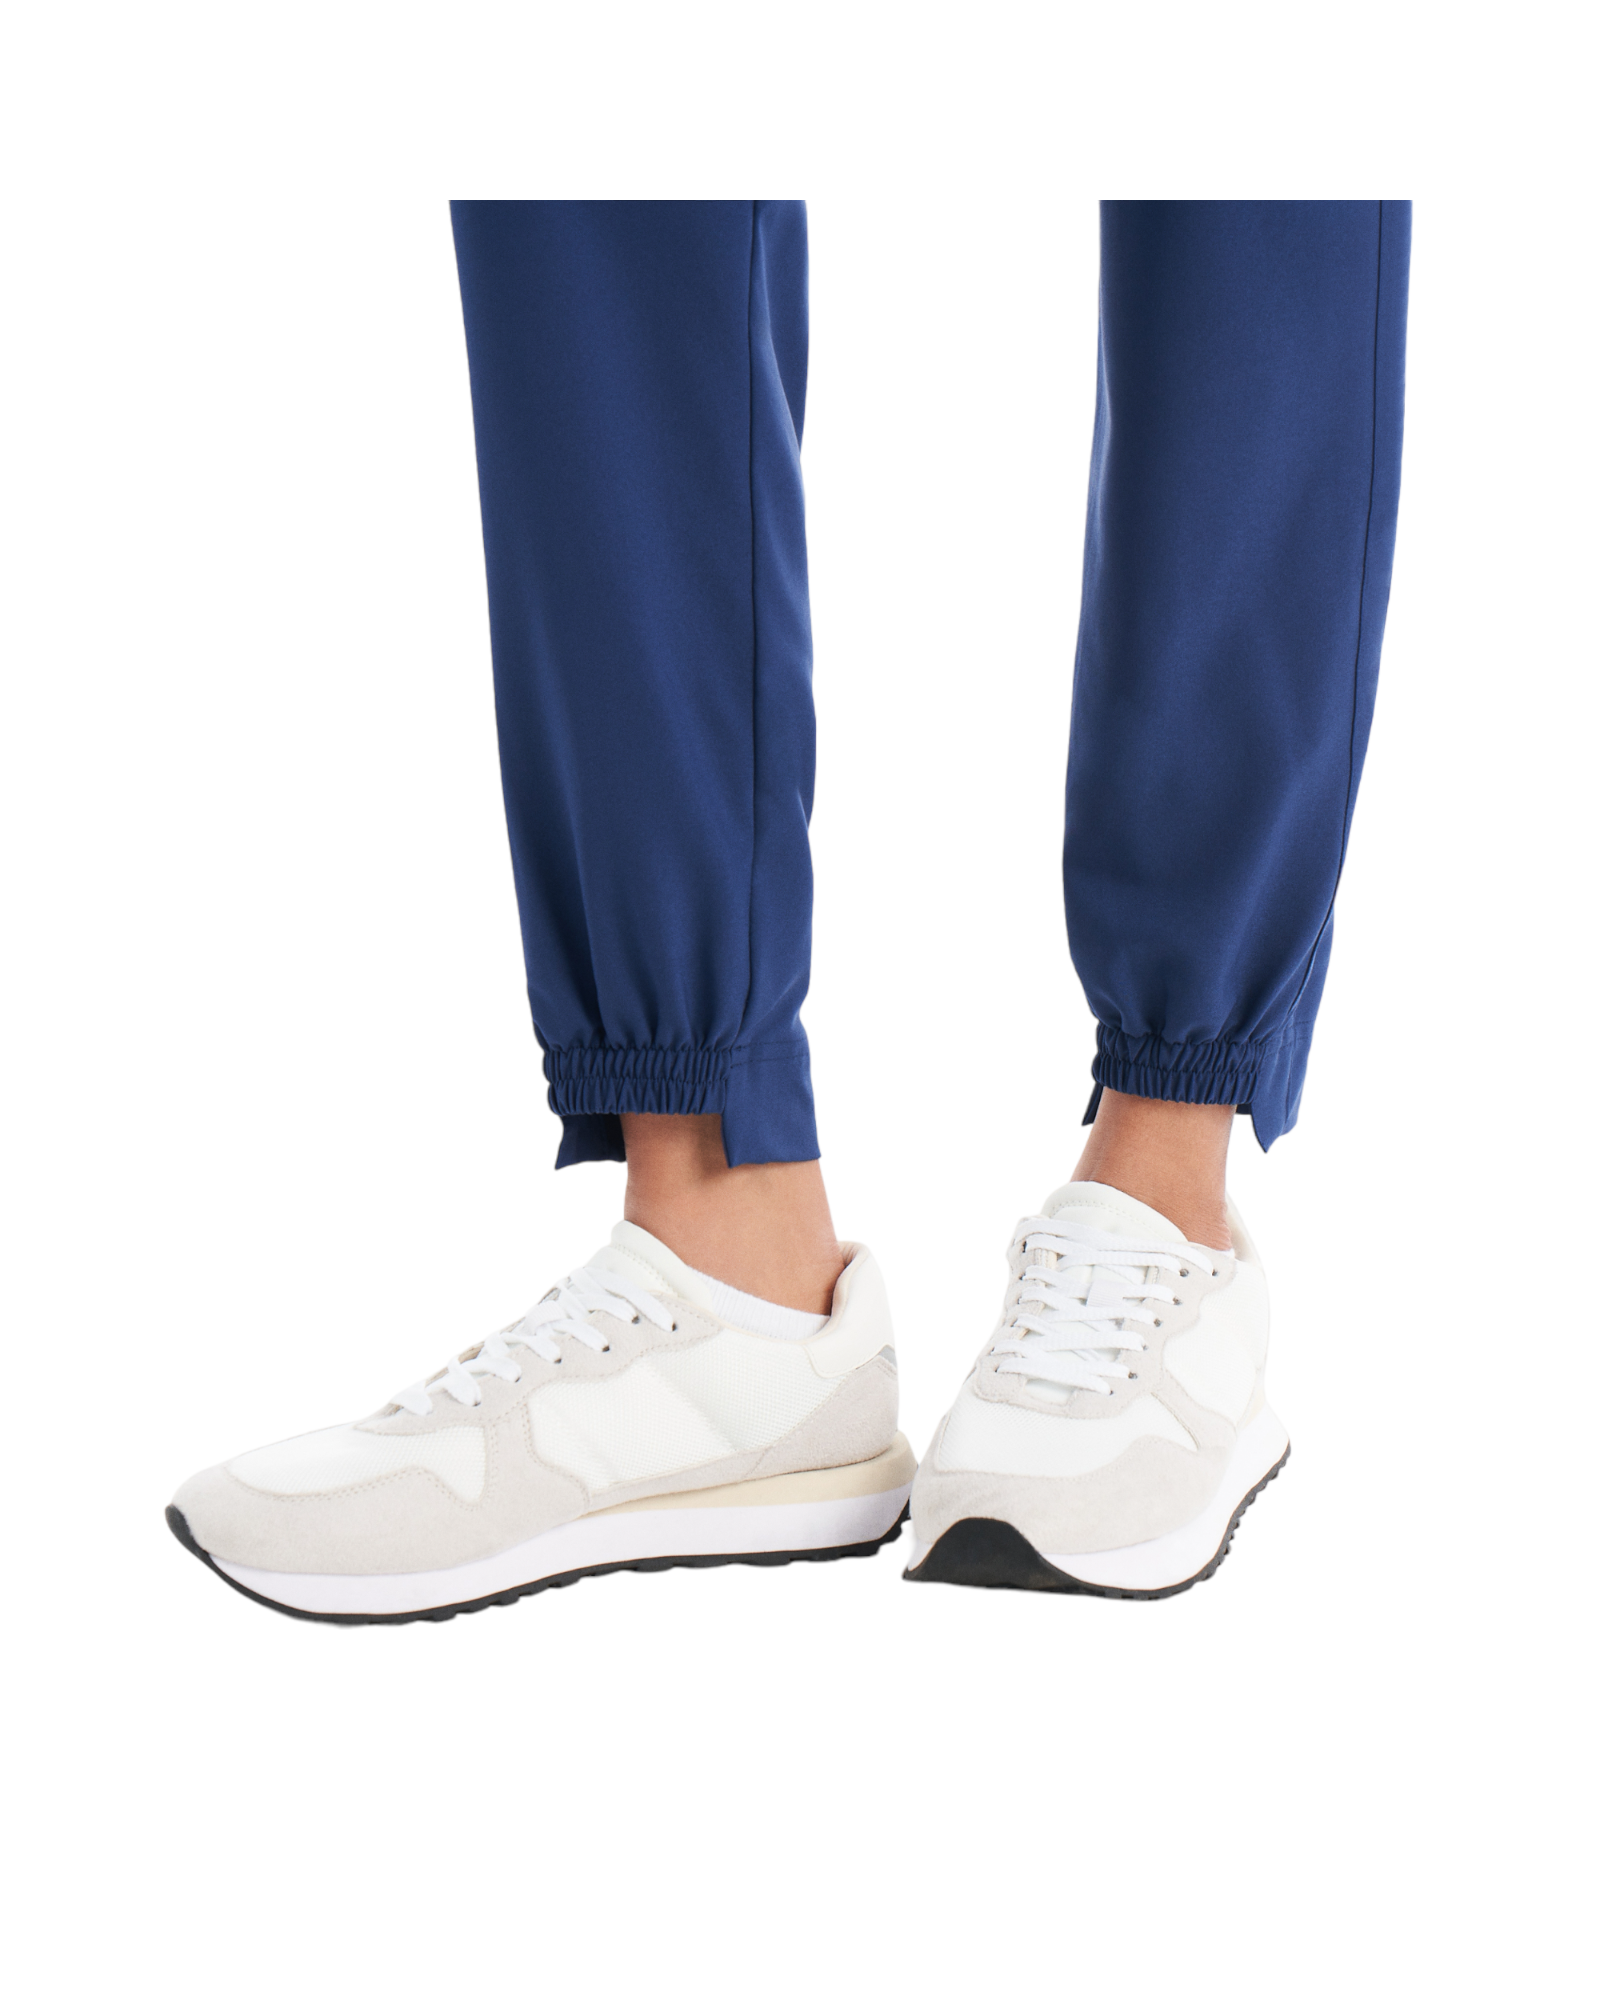 Pantalon de travail jogger hybride 6 poches pour femme White Cross CRFT #WB415 OS vue jambe au bas couleur Marine